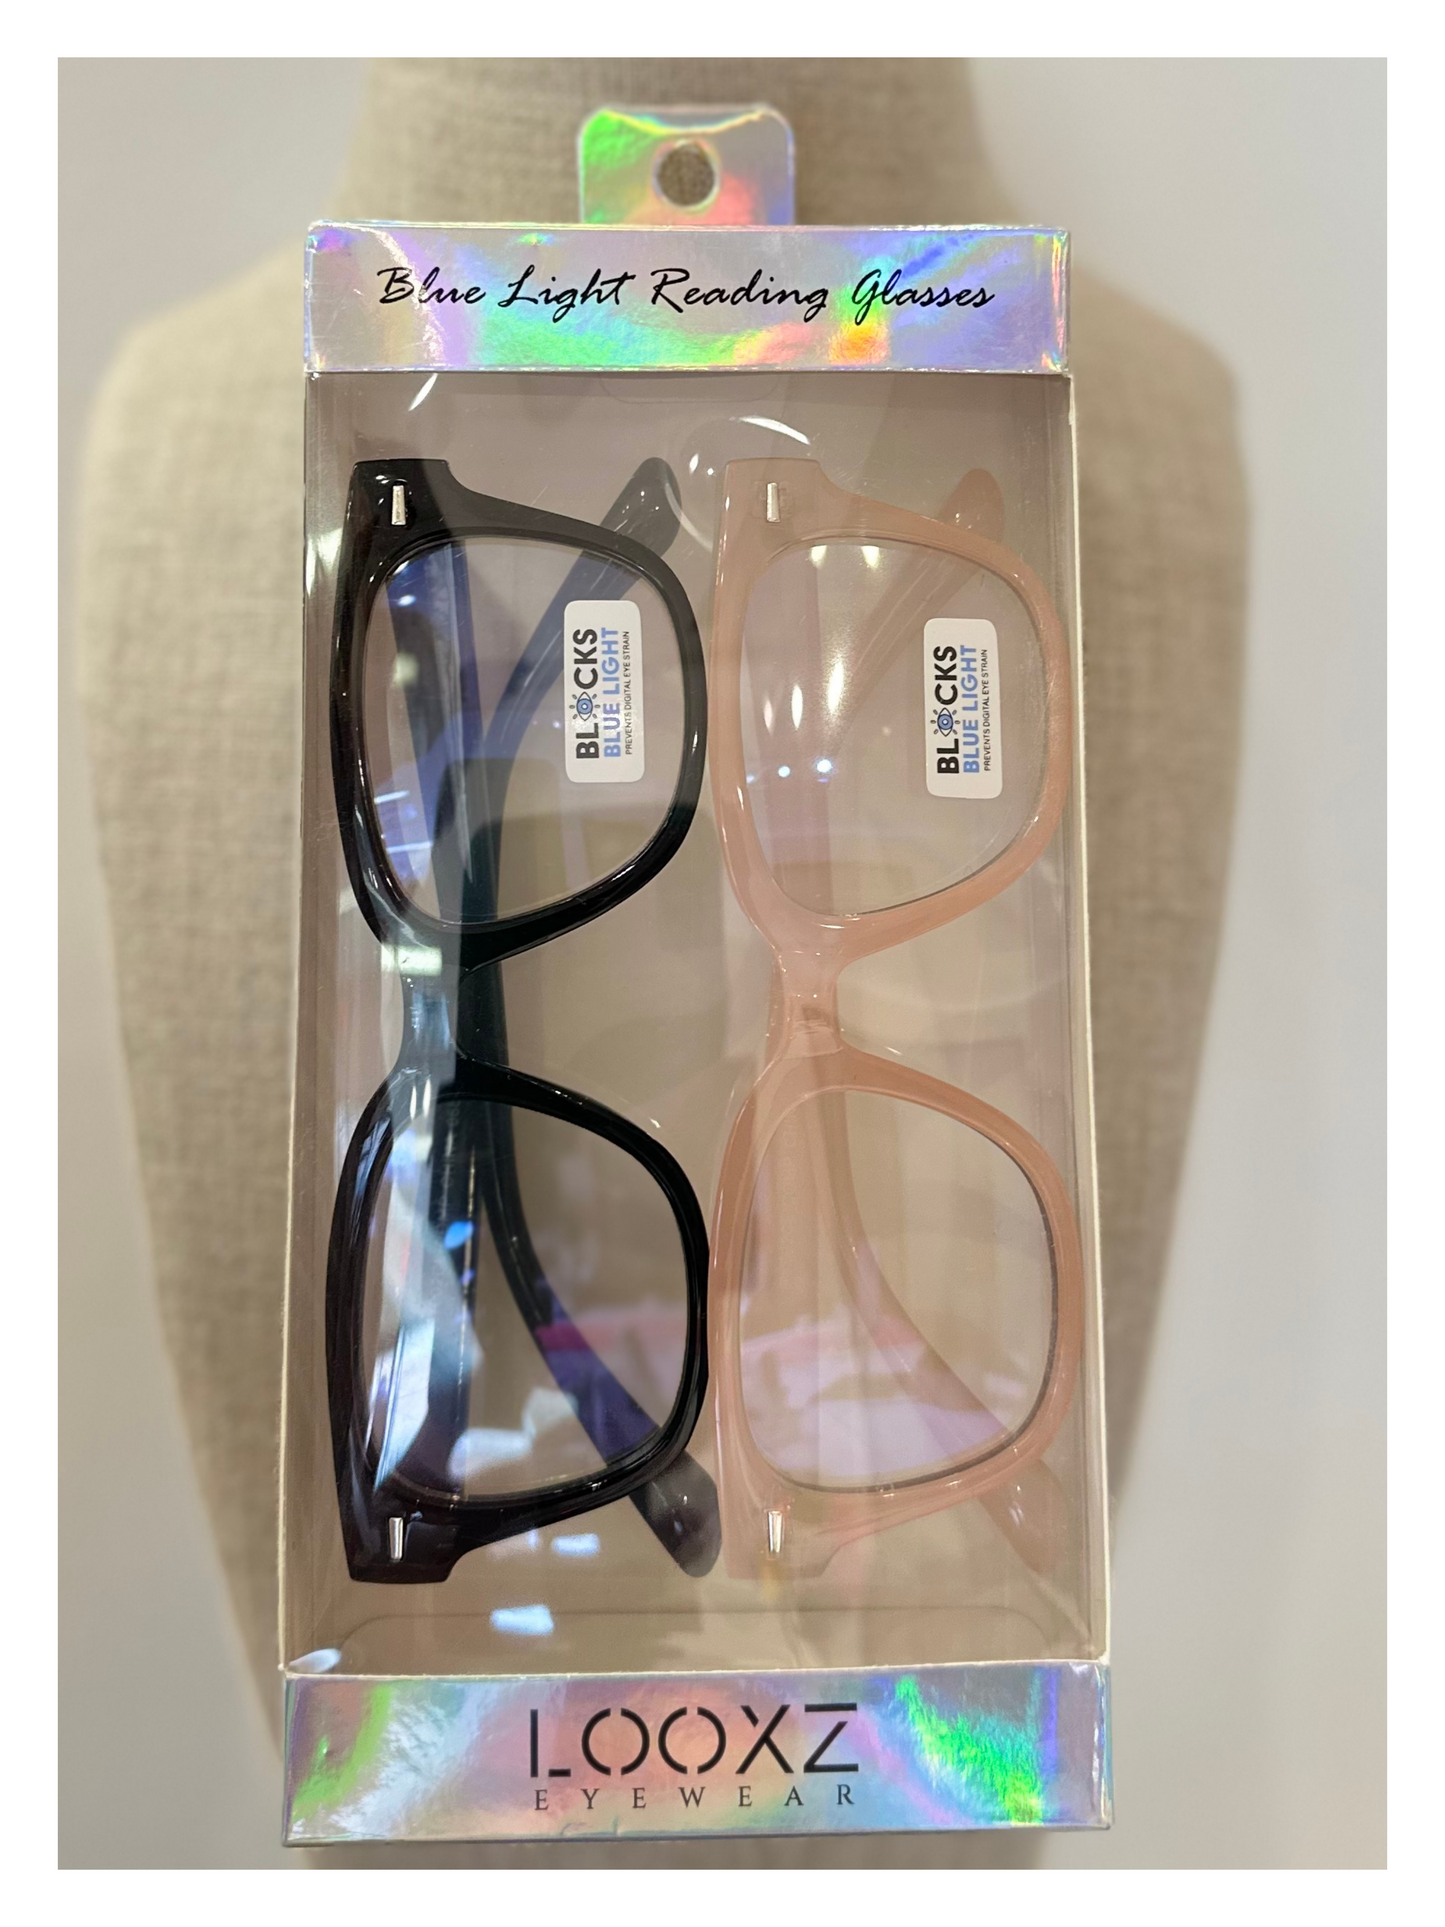 Laney Blue Light Glasses Duo